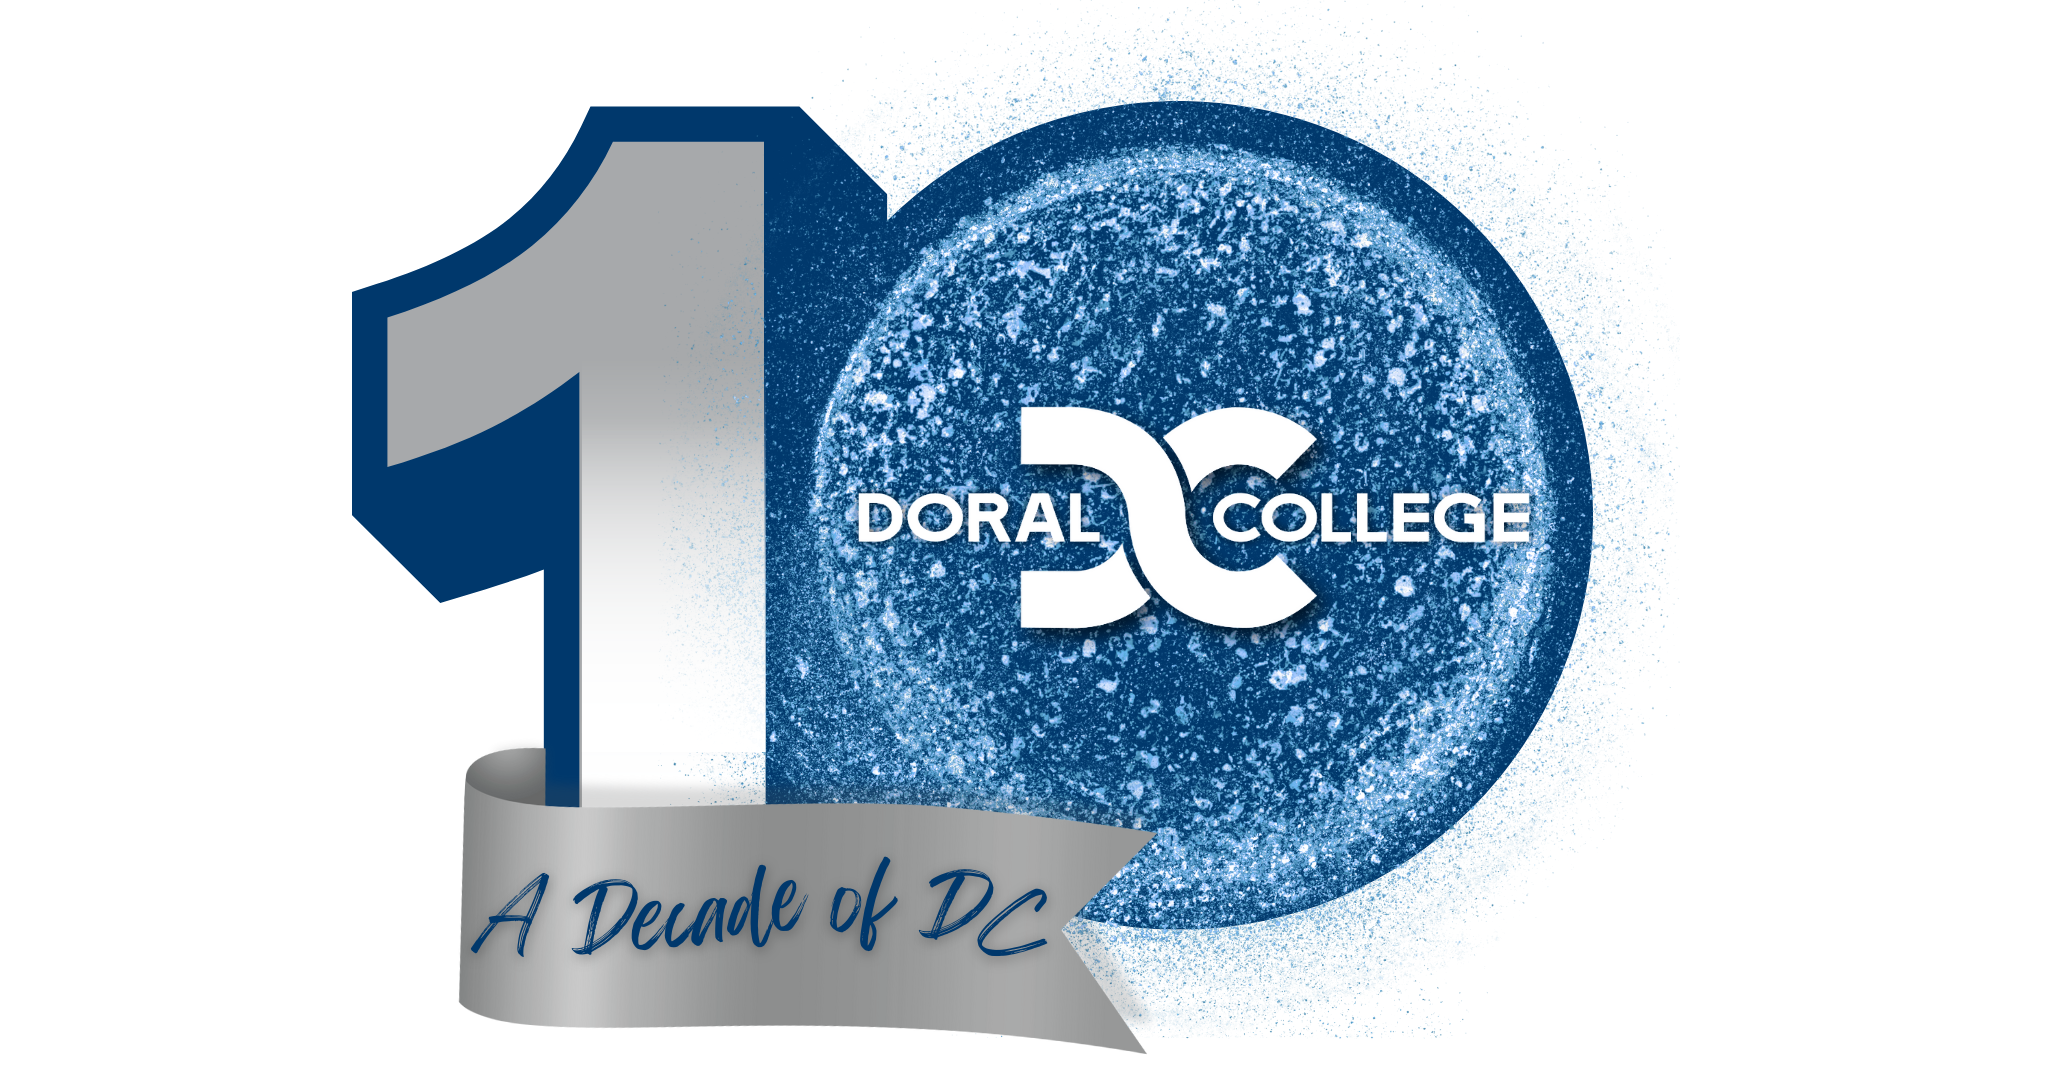 Doral College